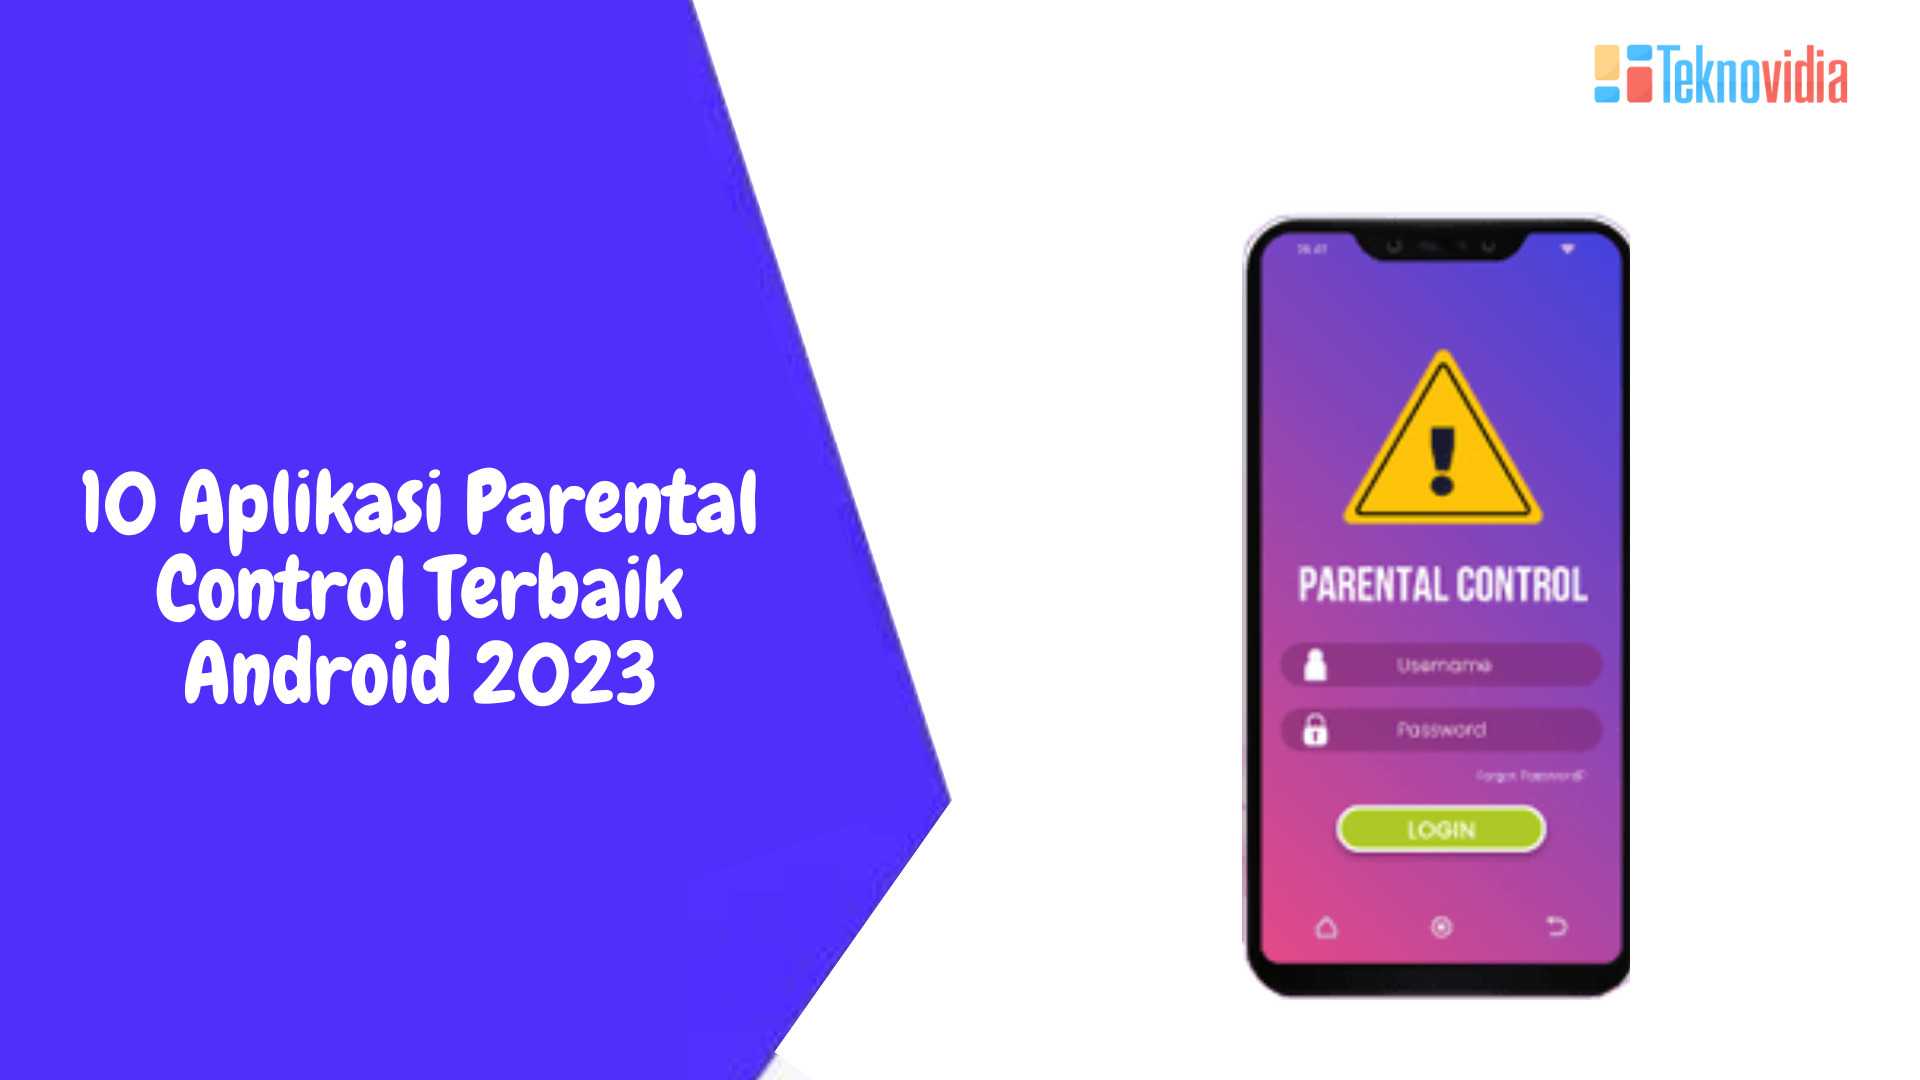 10 Aplikasi Parental Control Terbaik Android 2023